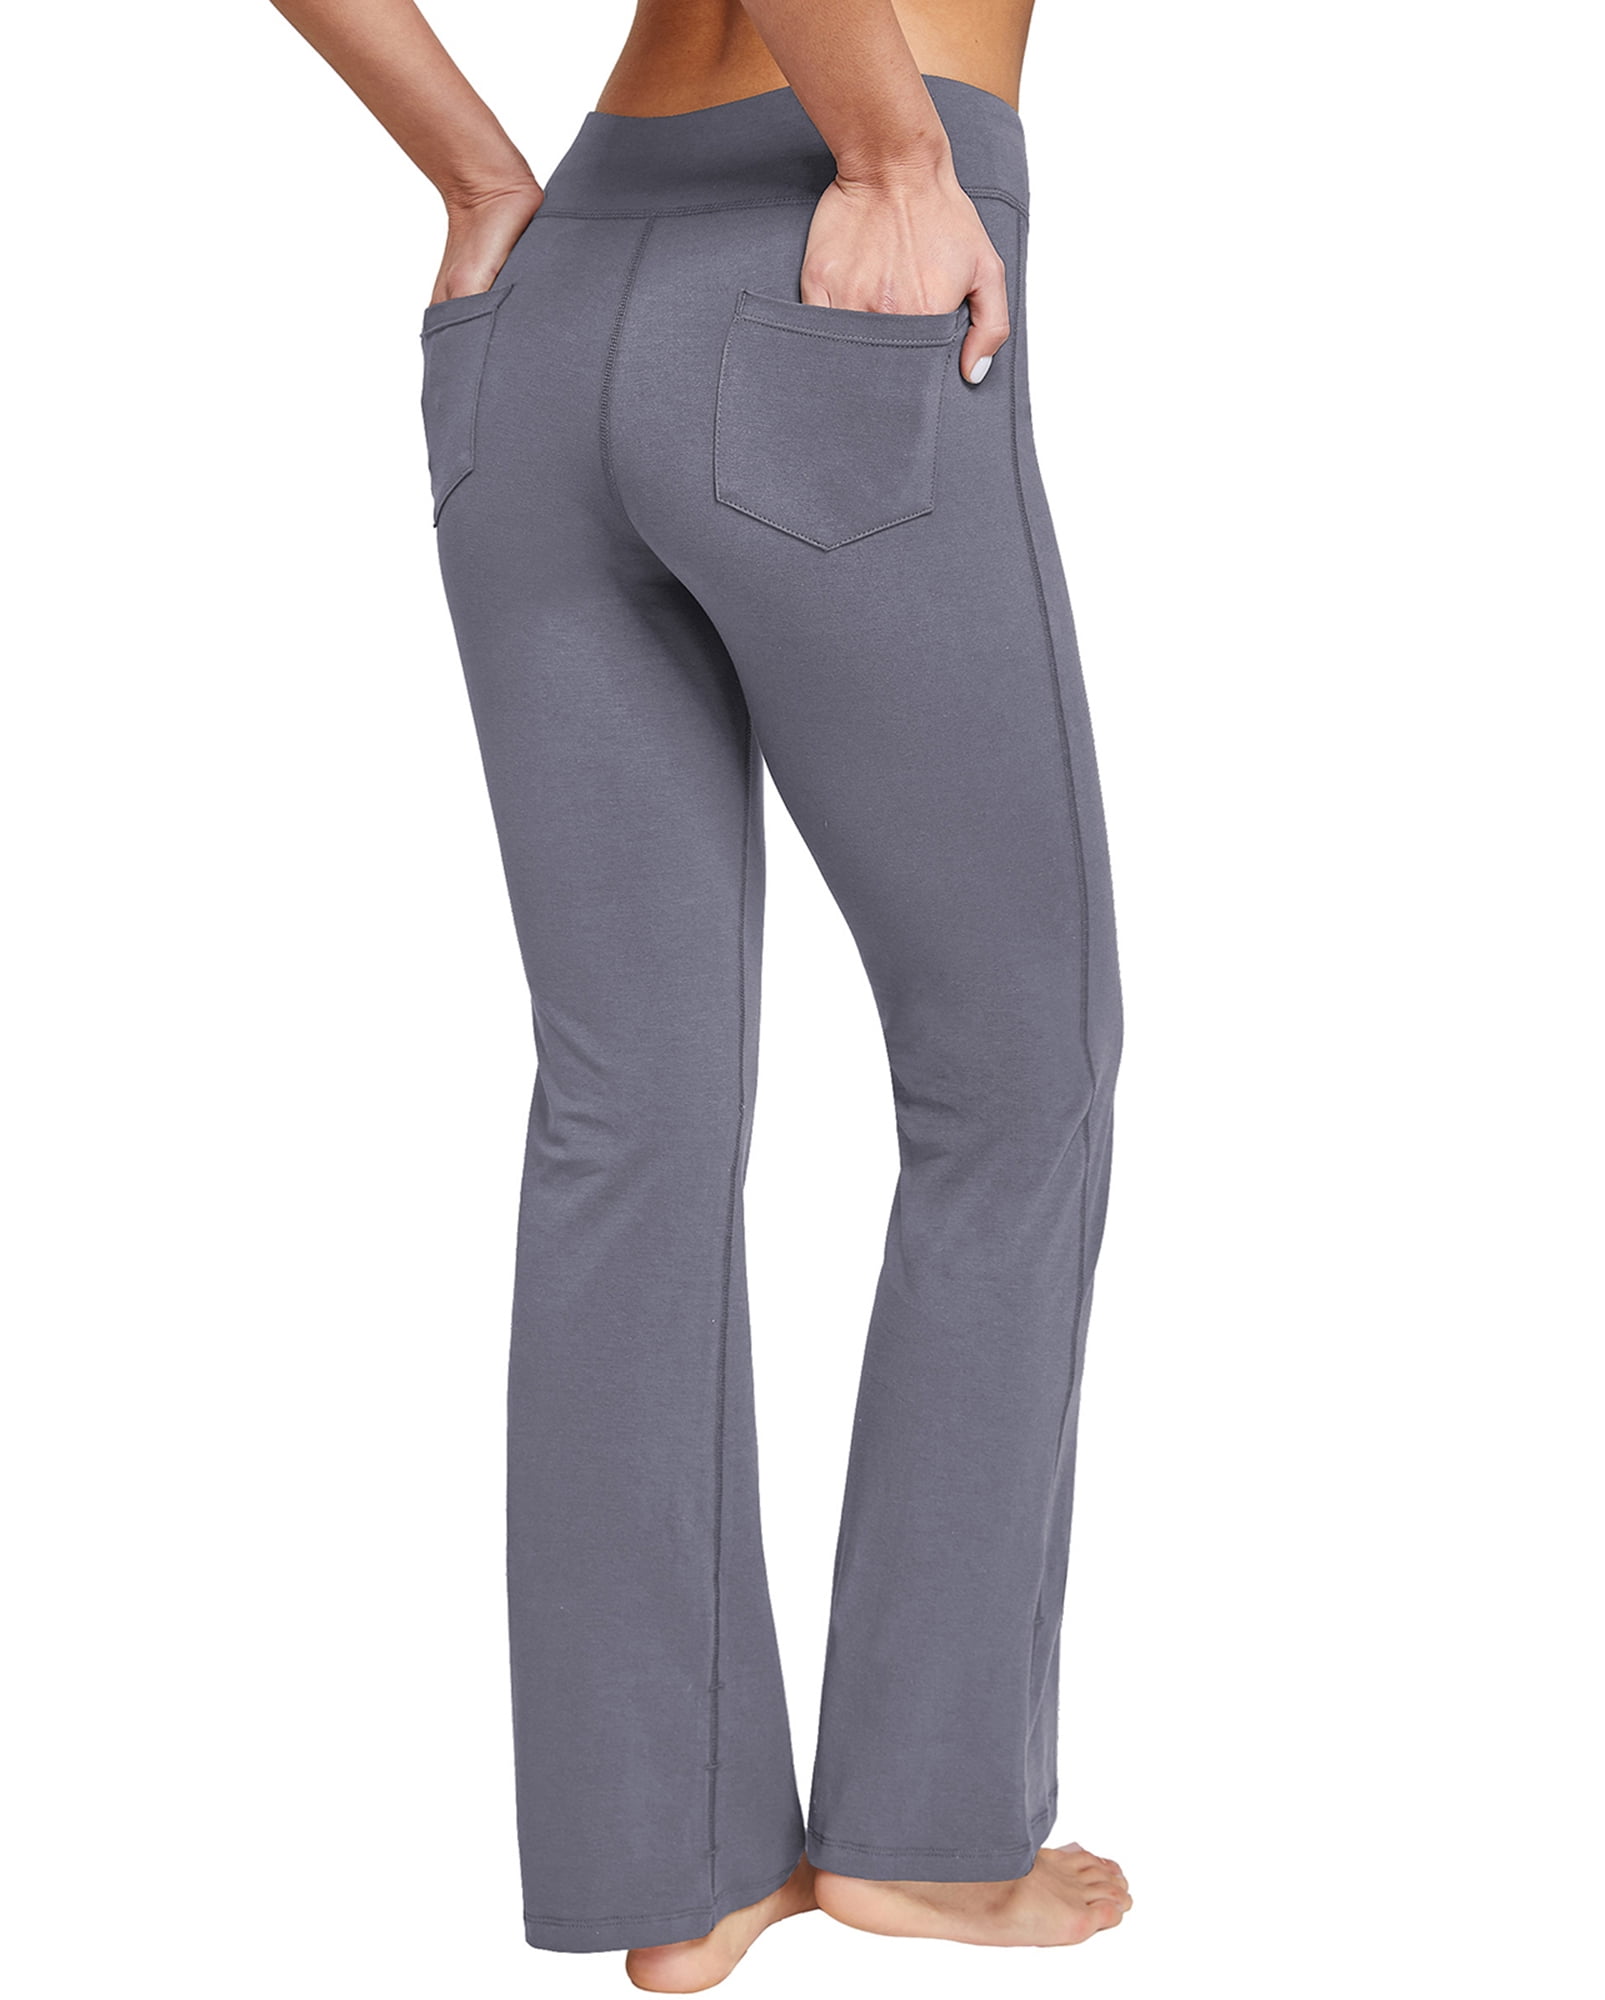 Leg Logo Ladies Grey Sweatpants - Large